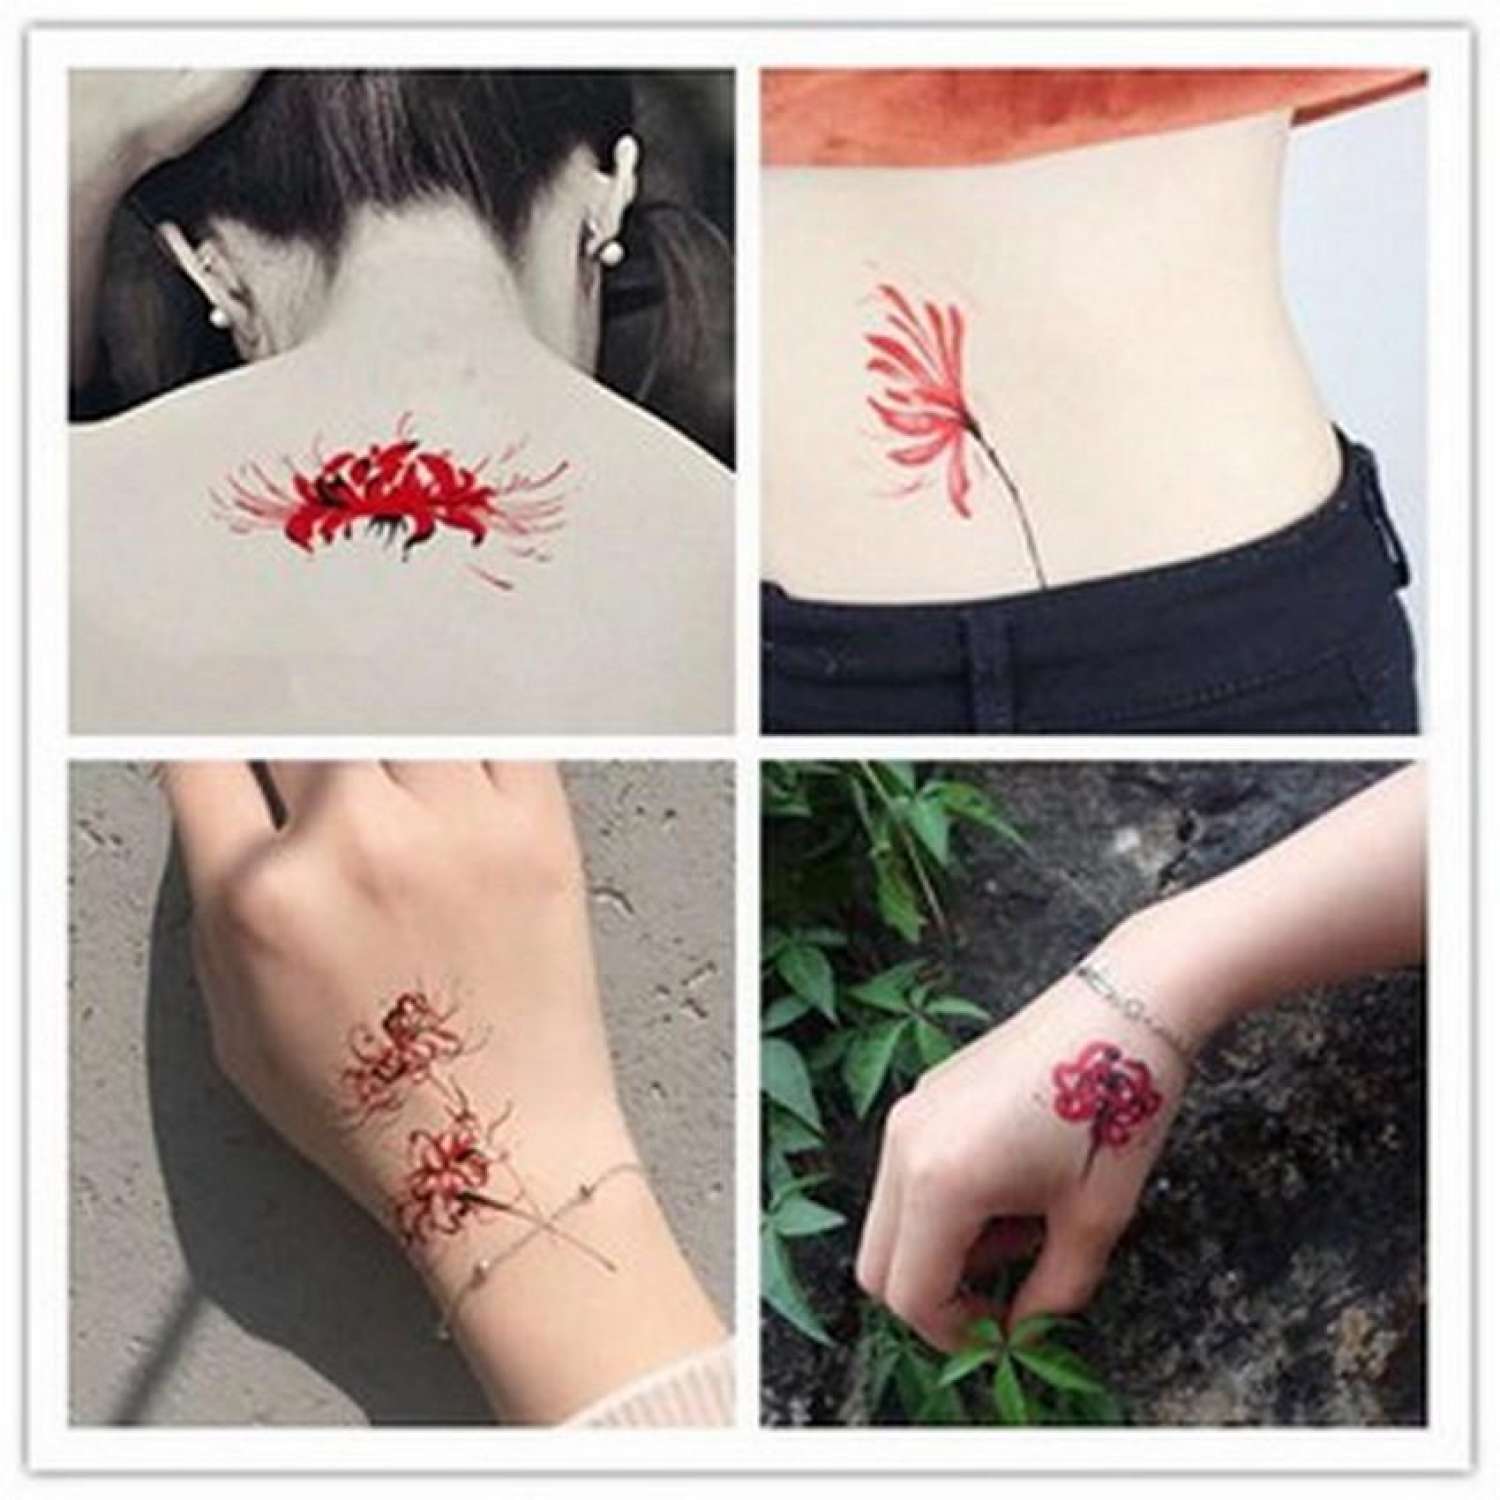 Set 10 Tờ Tattoo Miếng Dán Hình Xăm 15 Ngày Mini Hoa Bỉ Ngạn Hồng Sấm Sét  Chữ Tiếng Nhật Cá Voi Dao Legaxi  MixASale